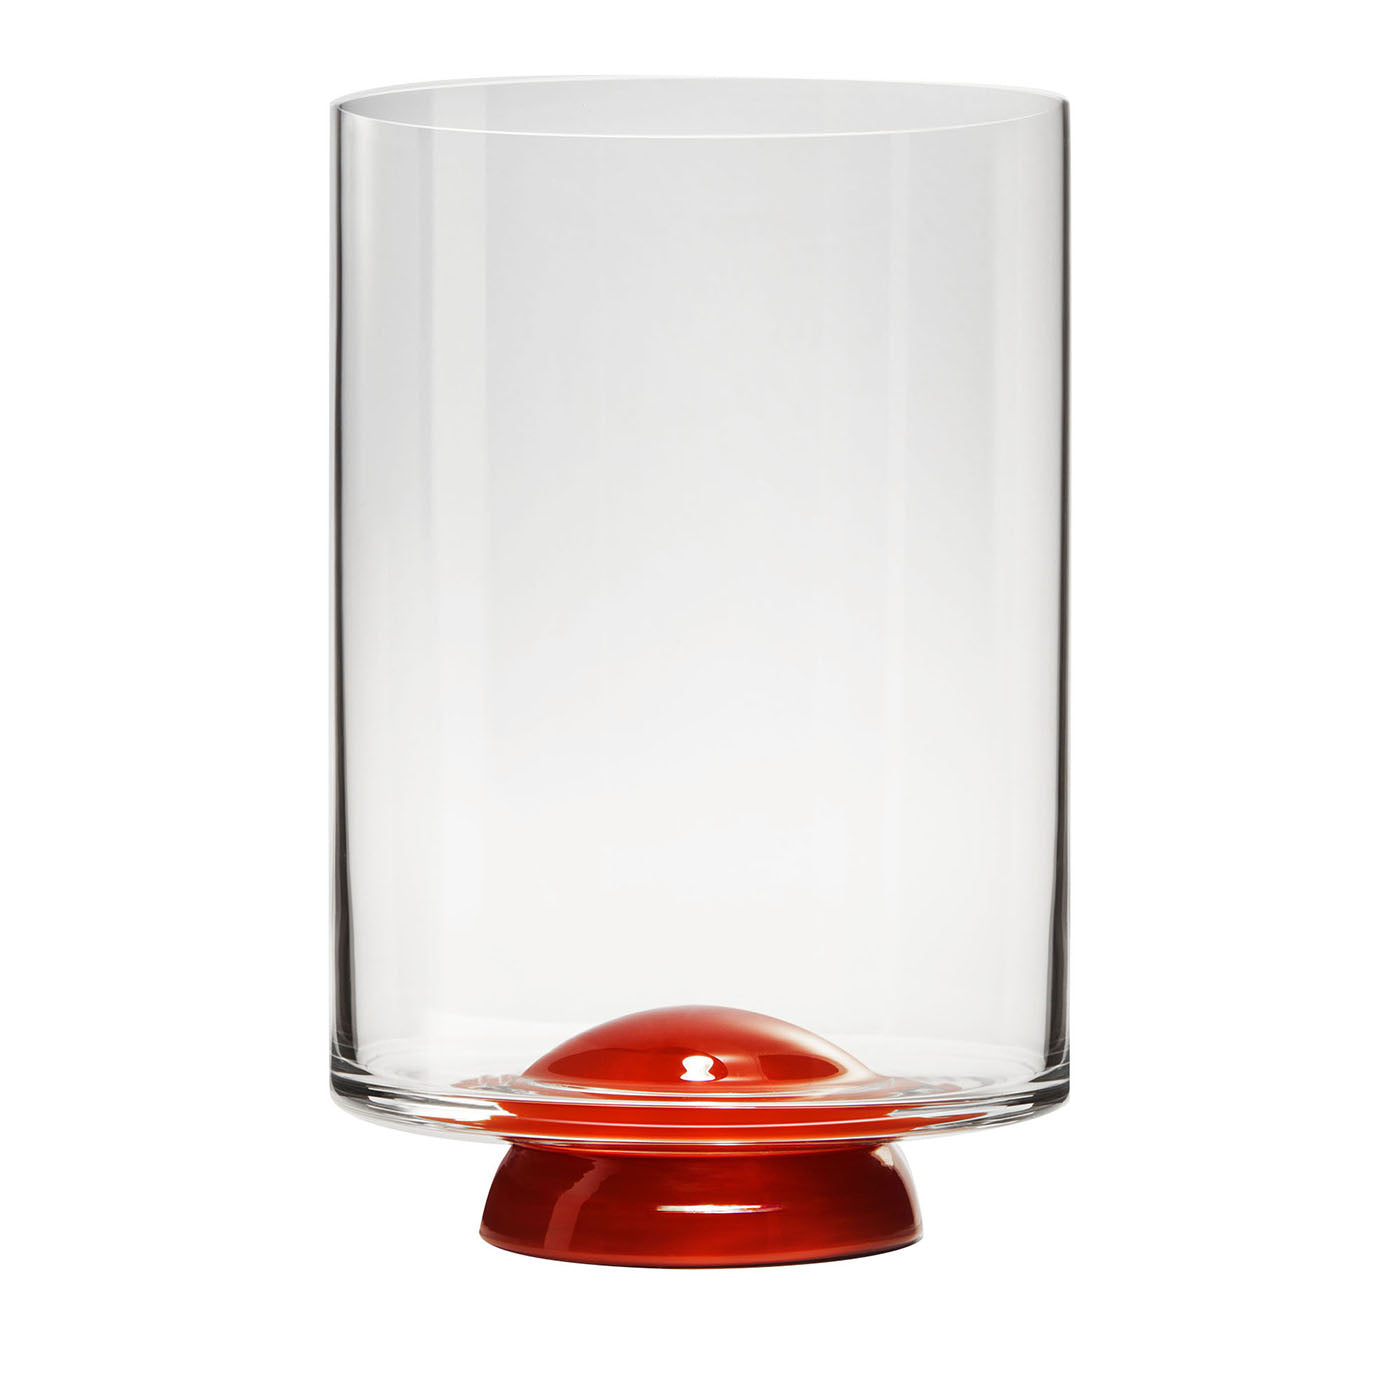 Vaso de agua rojo y transparente Dot, de Giovanni Patalano - Vista principal